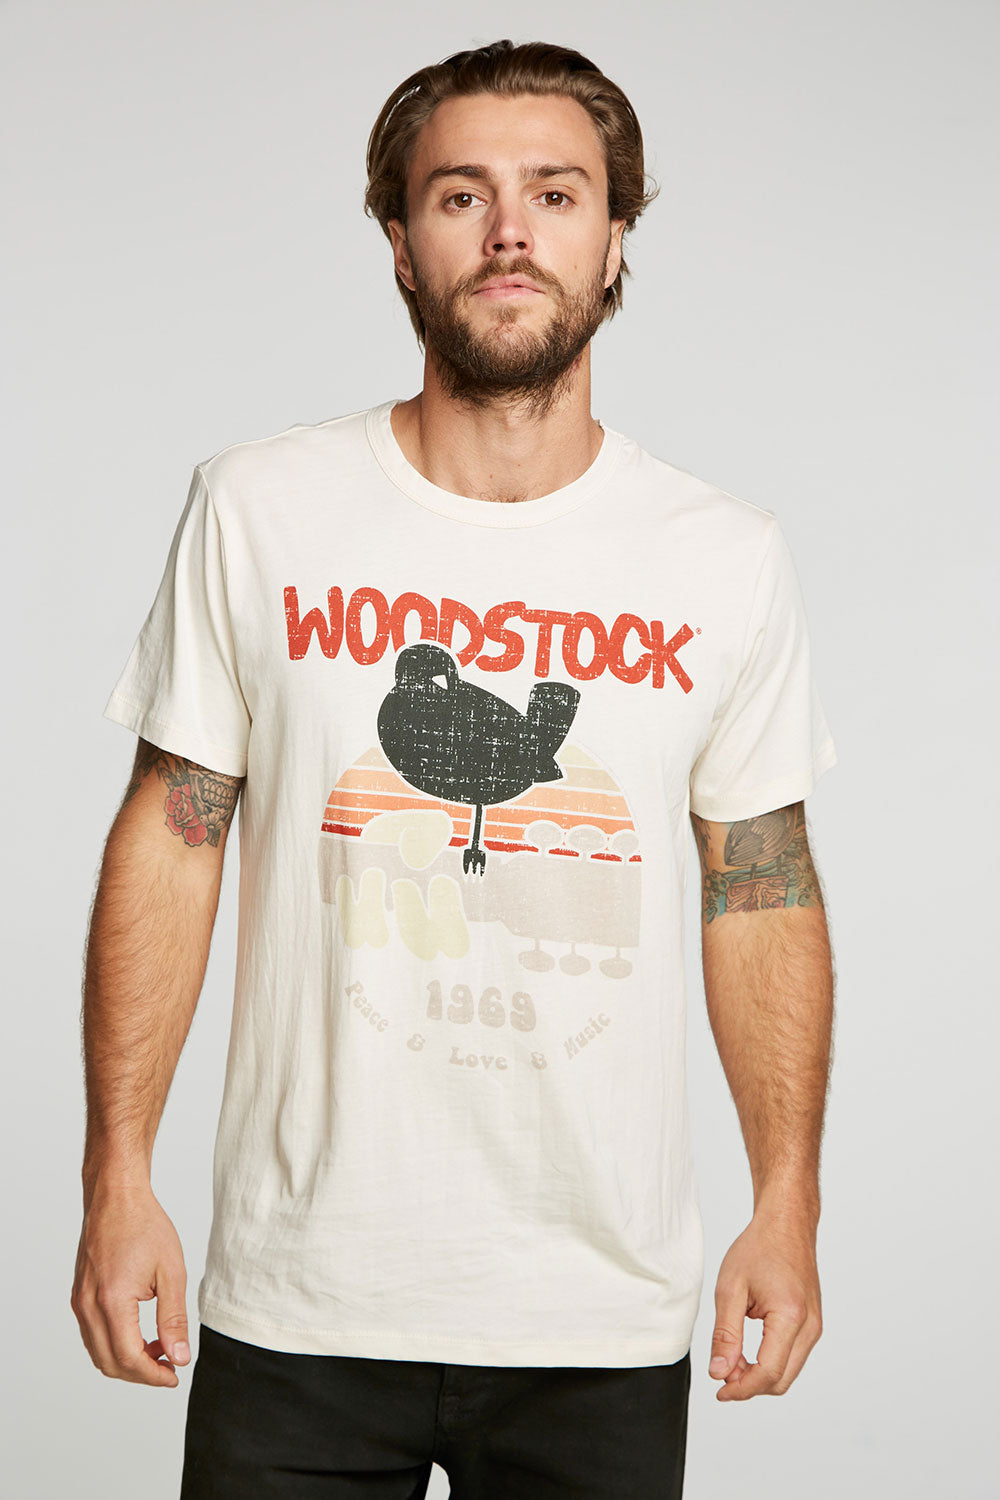 Woodstock -  1969